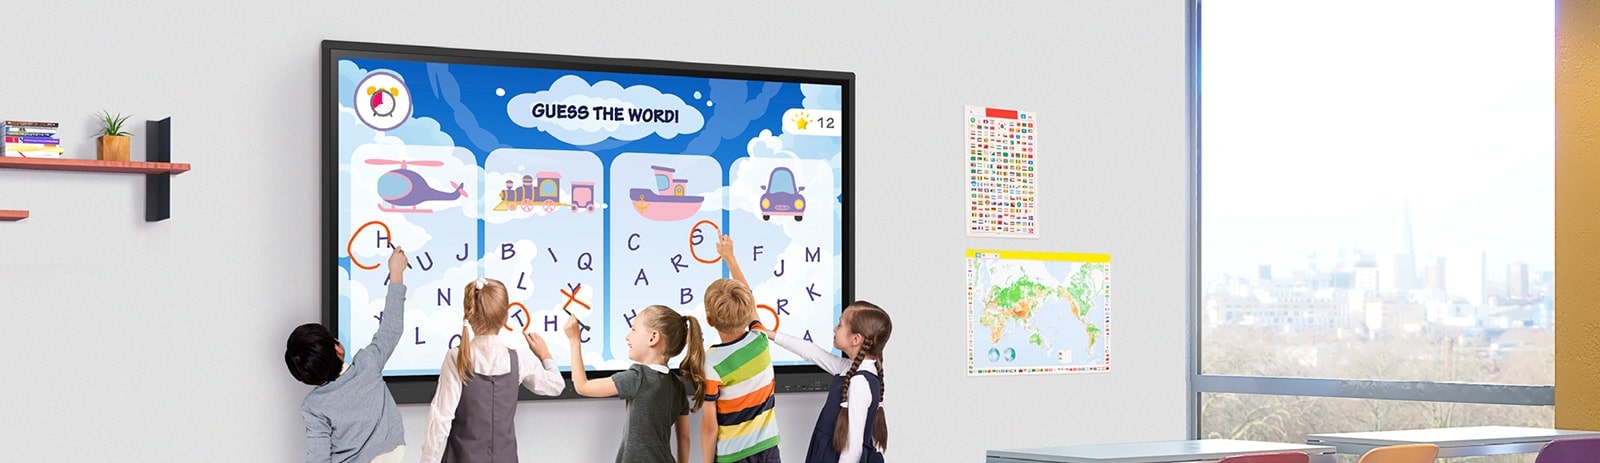 "Na sala de aula, vários alunos estão escrevendo simultaneamente na tela do LG CreateBoard."